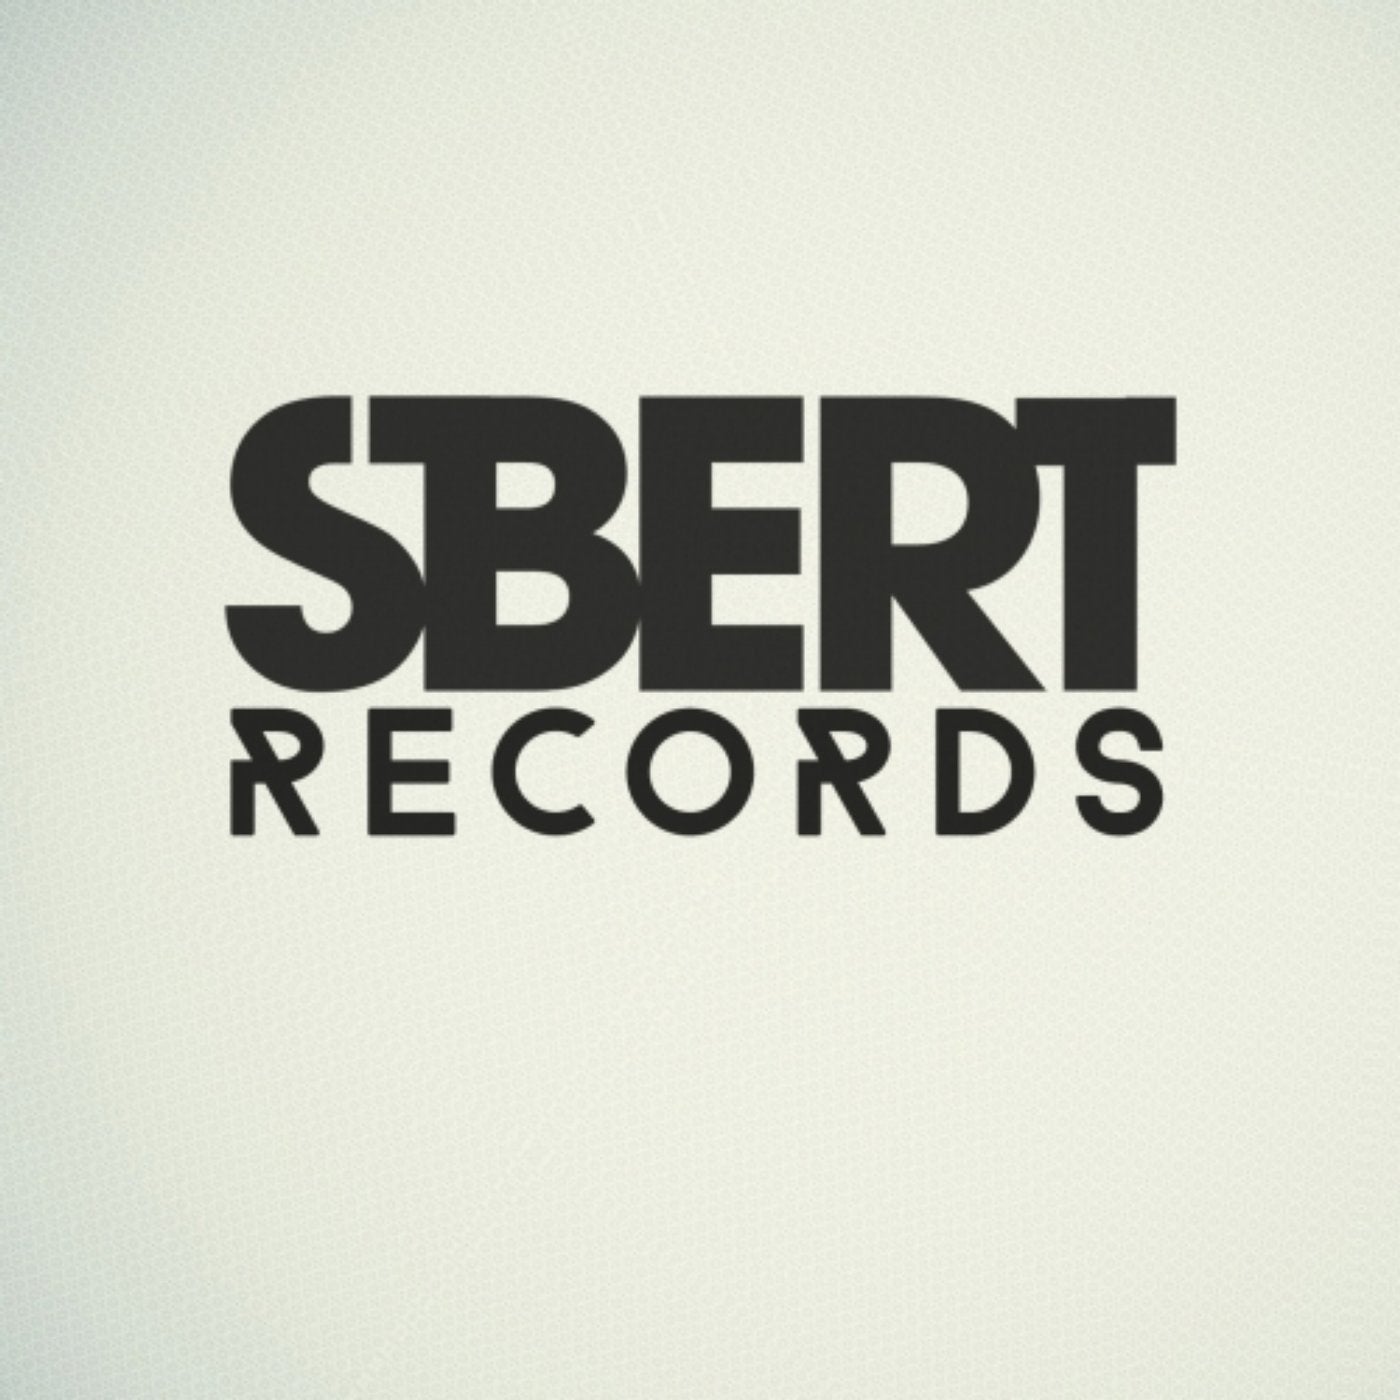 Dani Sbert, Diego Straube - estafa (Original Mix). Enchance. Sbert работа. Sbert